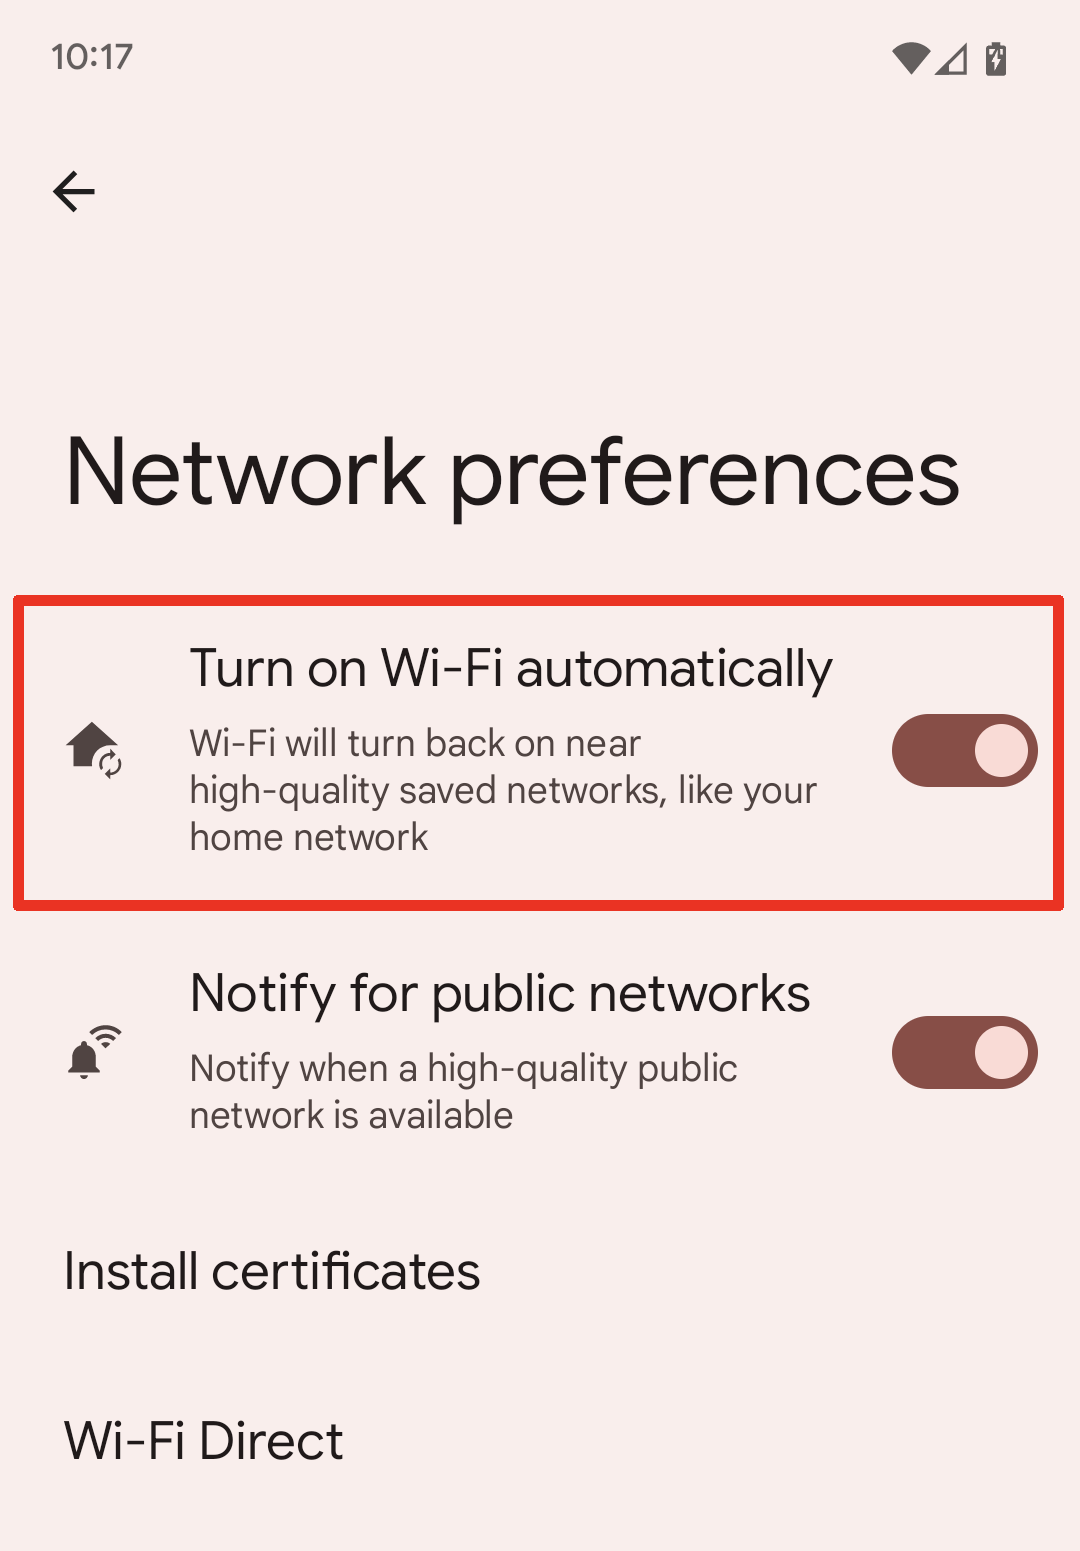 הפעל את תכונת ה-Wi-Fi באופן אוטומטי